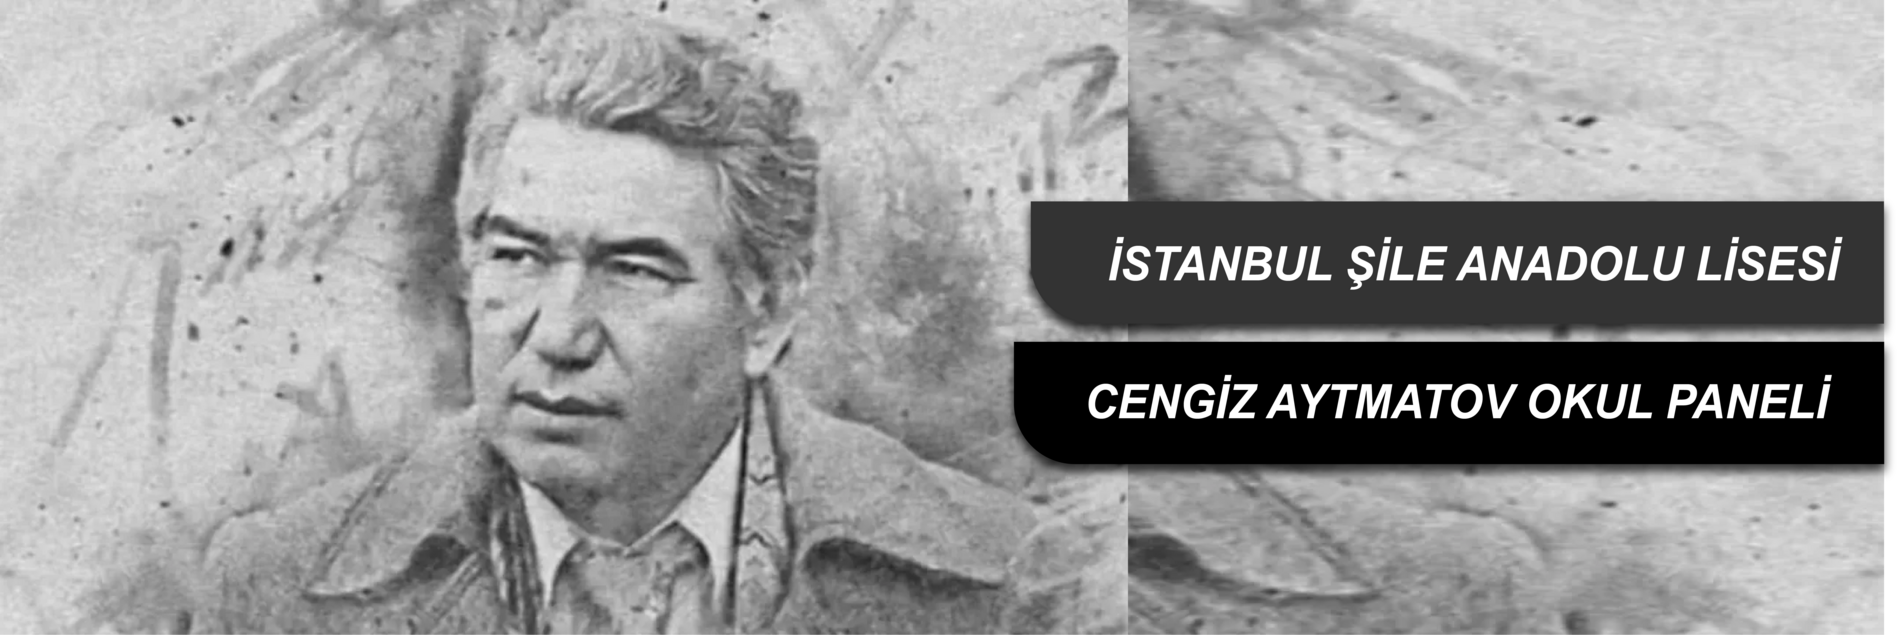 Anadolu Mektebi Yazar Okumaları Projesi "Cengiz Aytmatov Paneli"